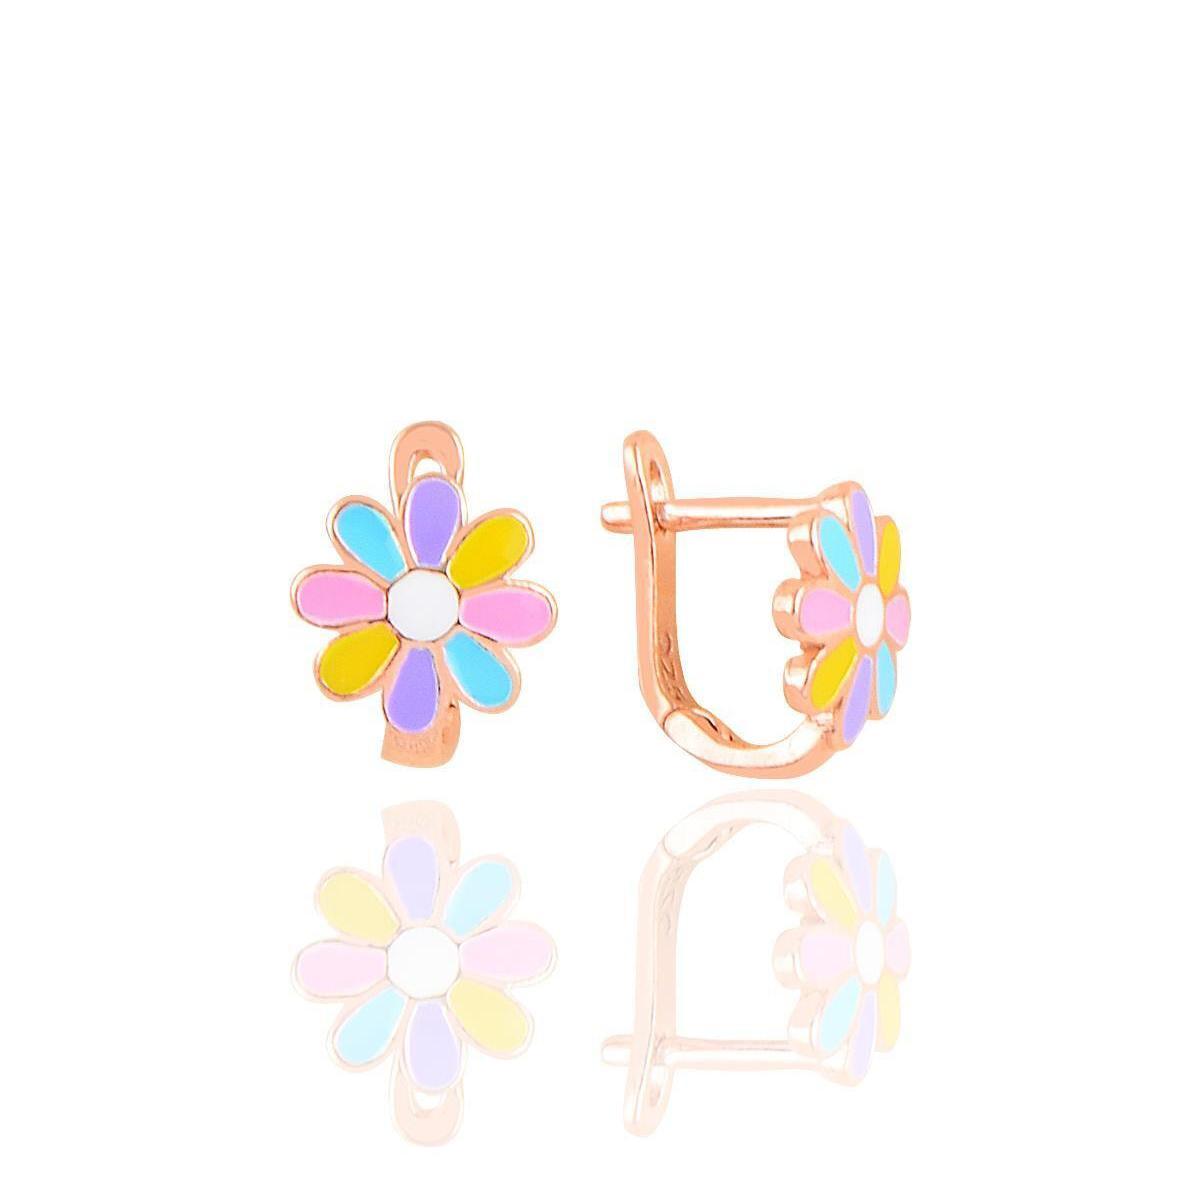 Daisy Jewelry • Daisy Hoop Earrings • Daisy Earrings • Gift For Mom - Trending Silver Gifts